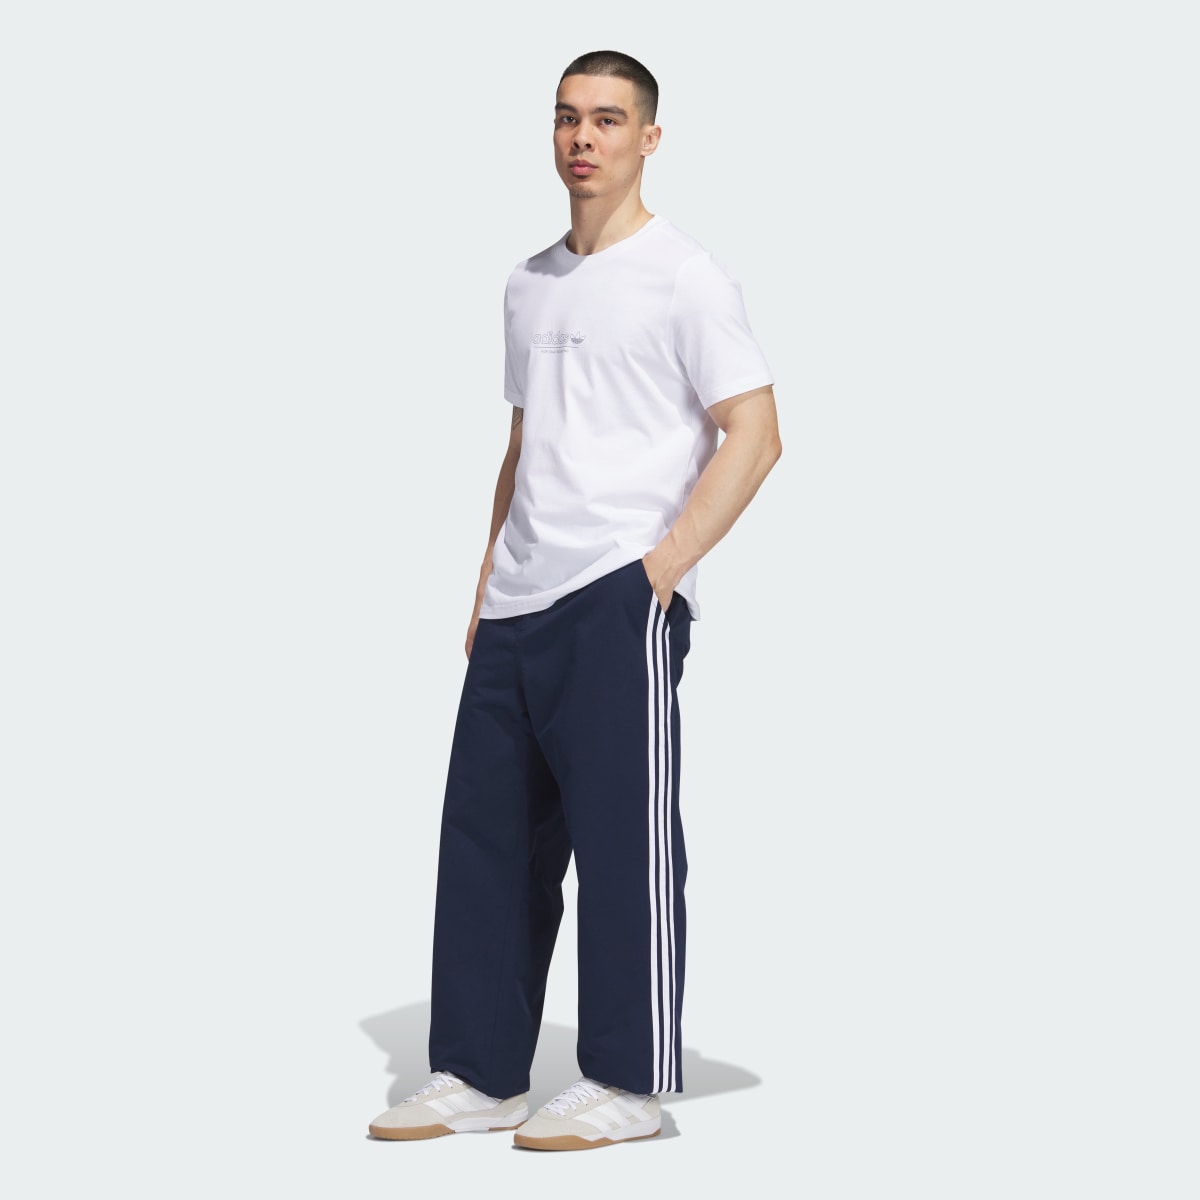 Adidas 3-Stripes Skate Chino Pants. 6